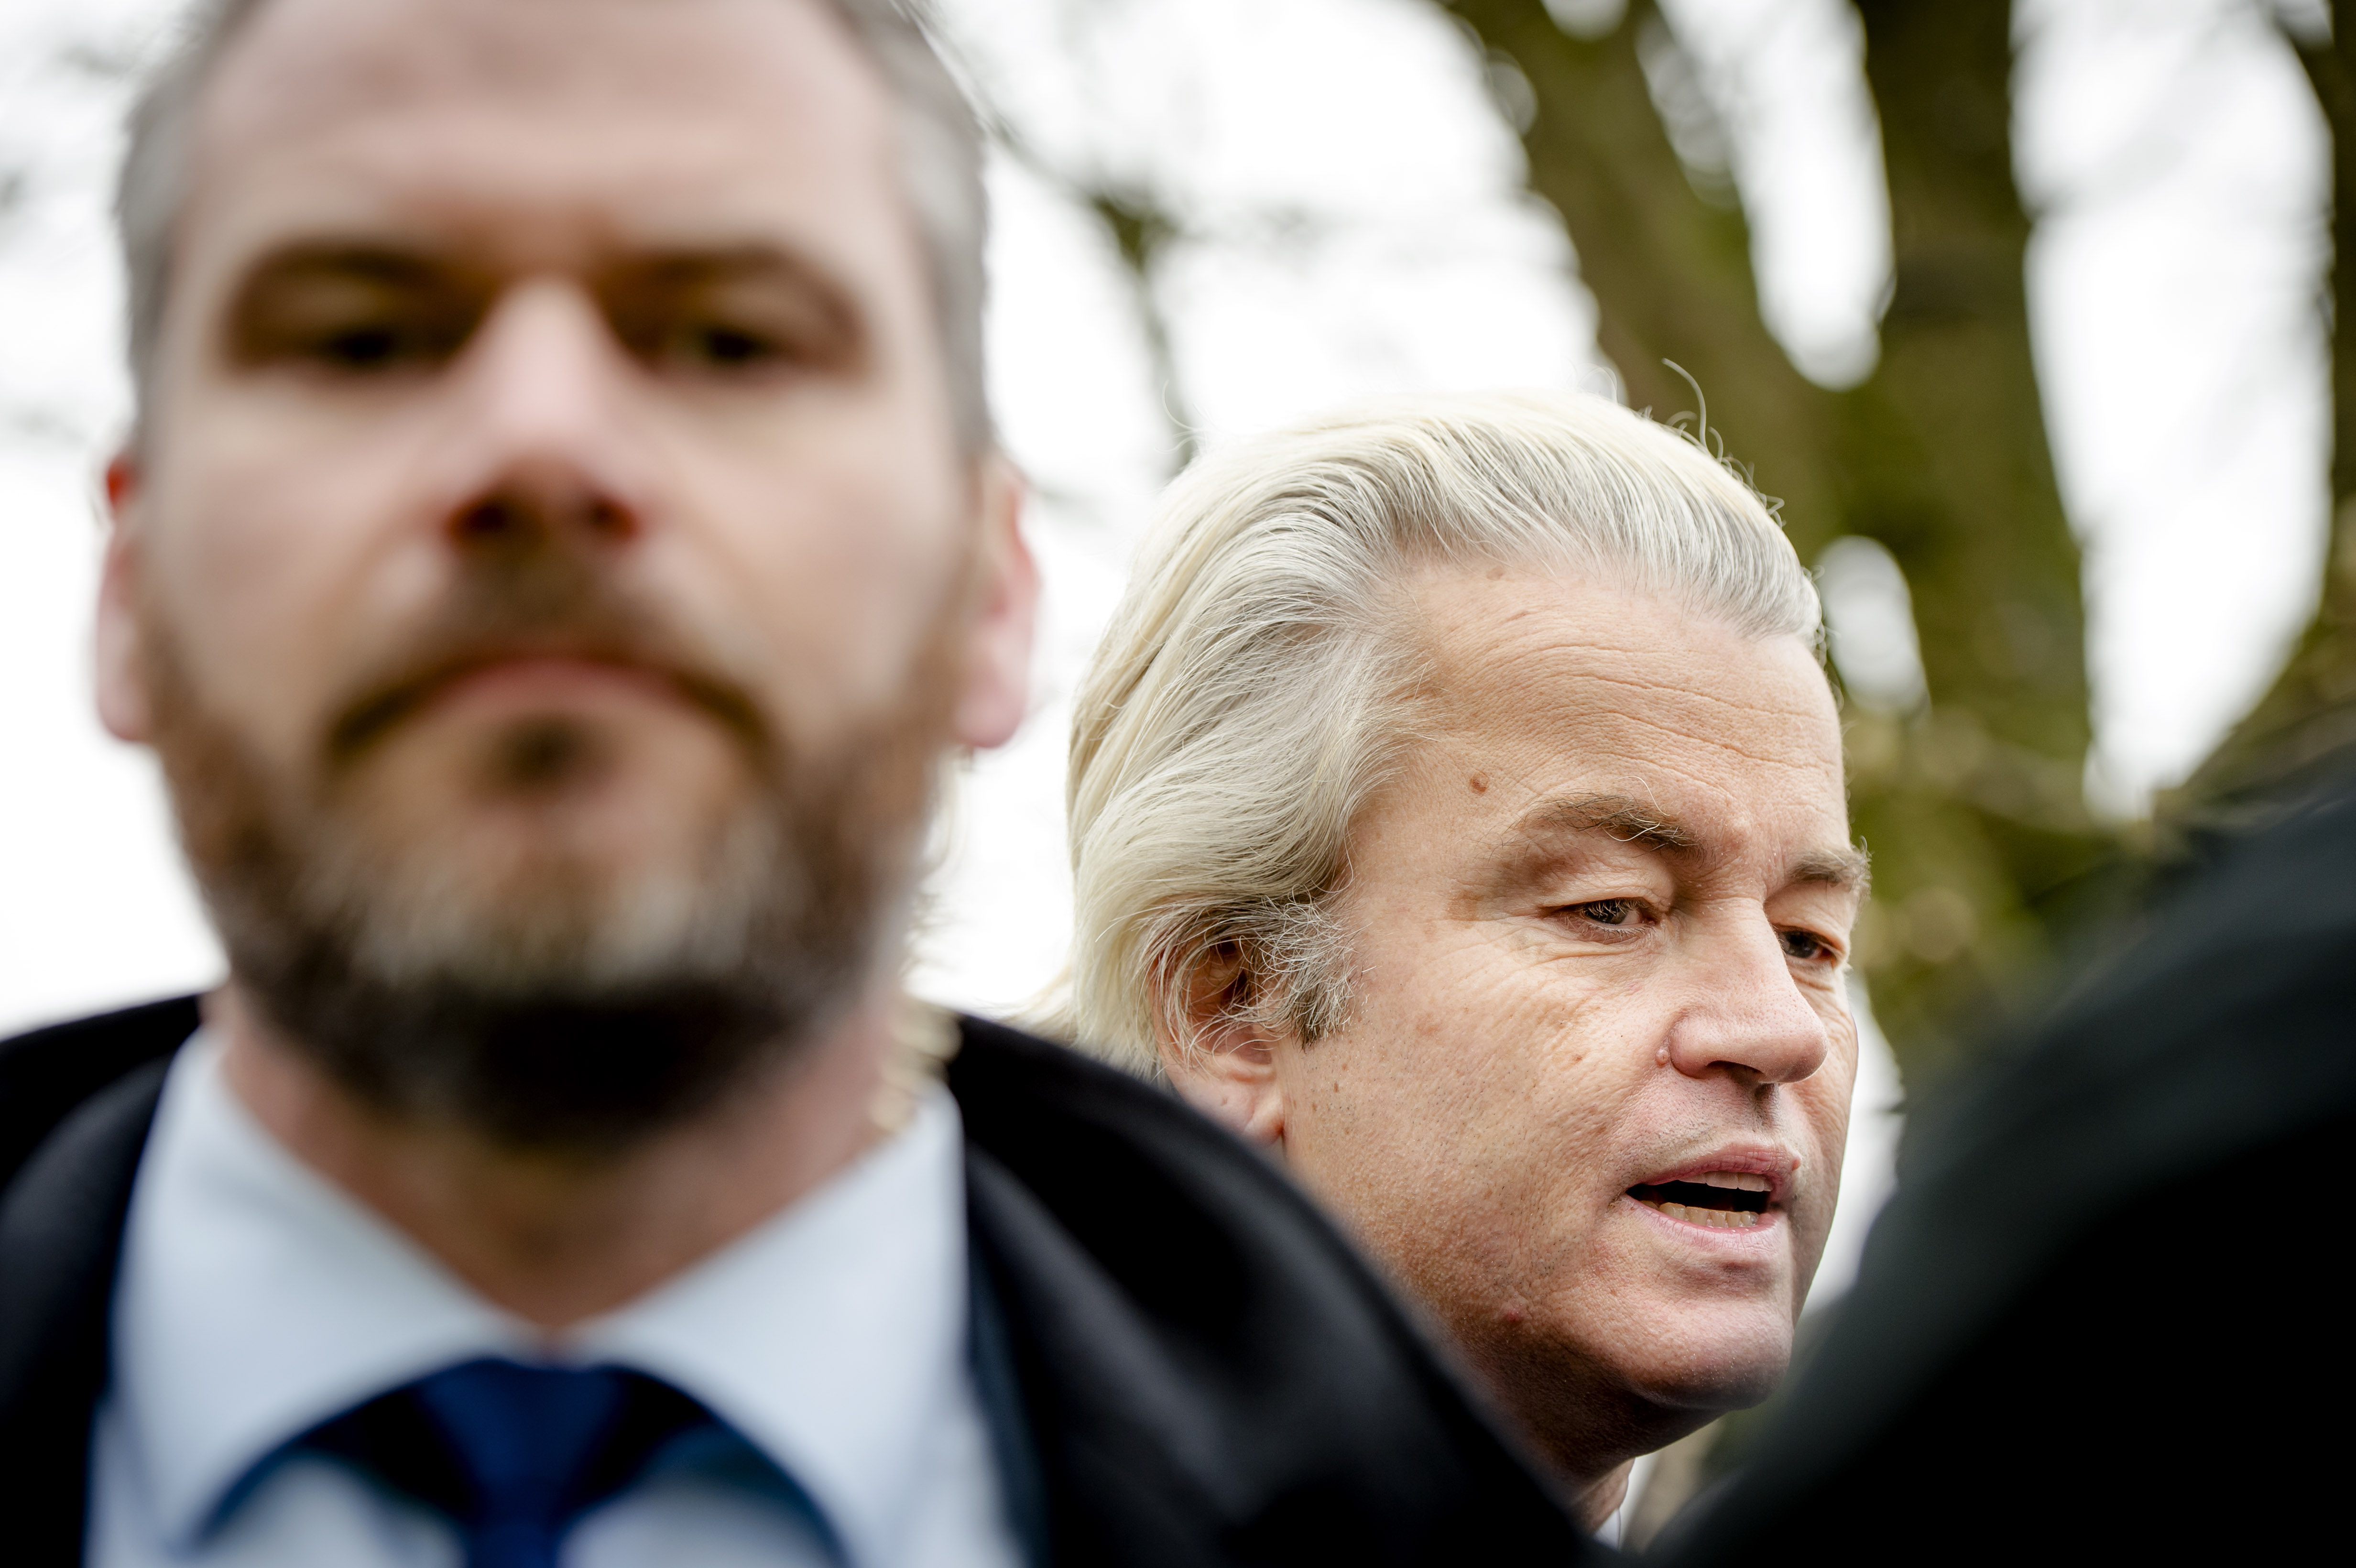 2016-04-05 12:17:14 PURMEREND - PVV-leider Geert Wilders bezoekt Purmerend om te flyeren tegen het associatieverdrag tussen de EU en Oekraine. ANP ROBIN VAN LONKHUIJSEN